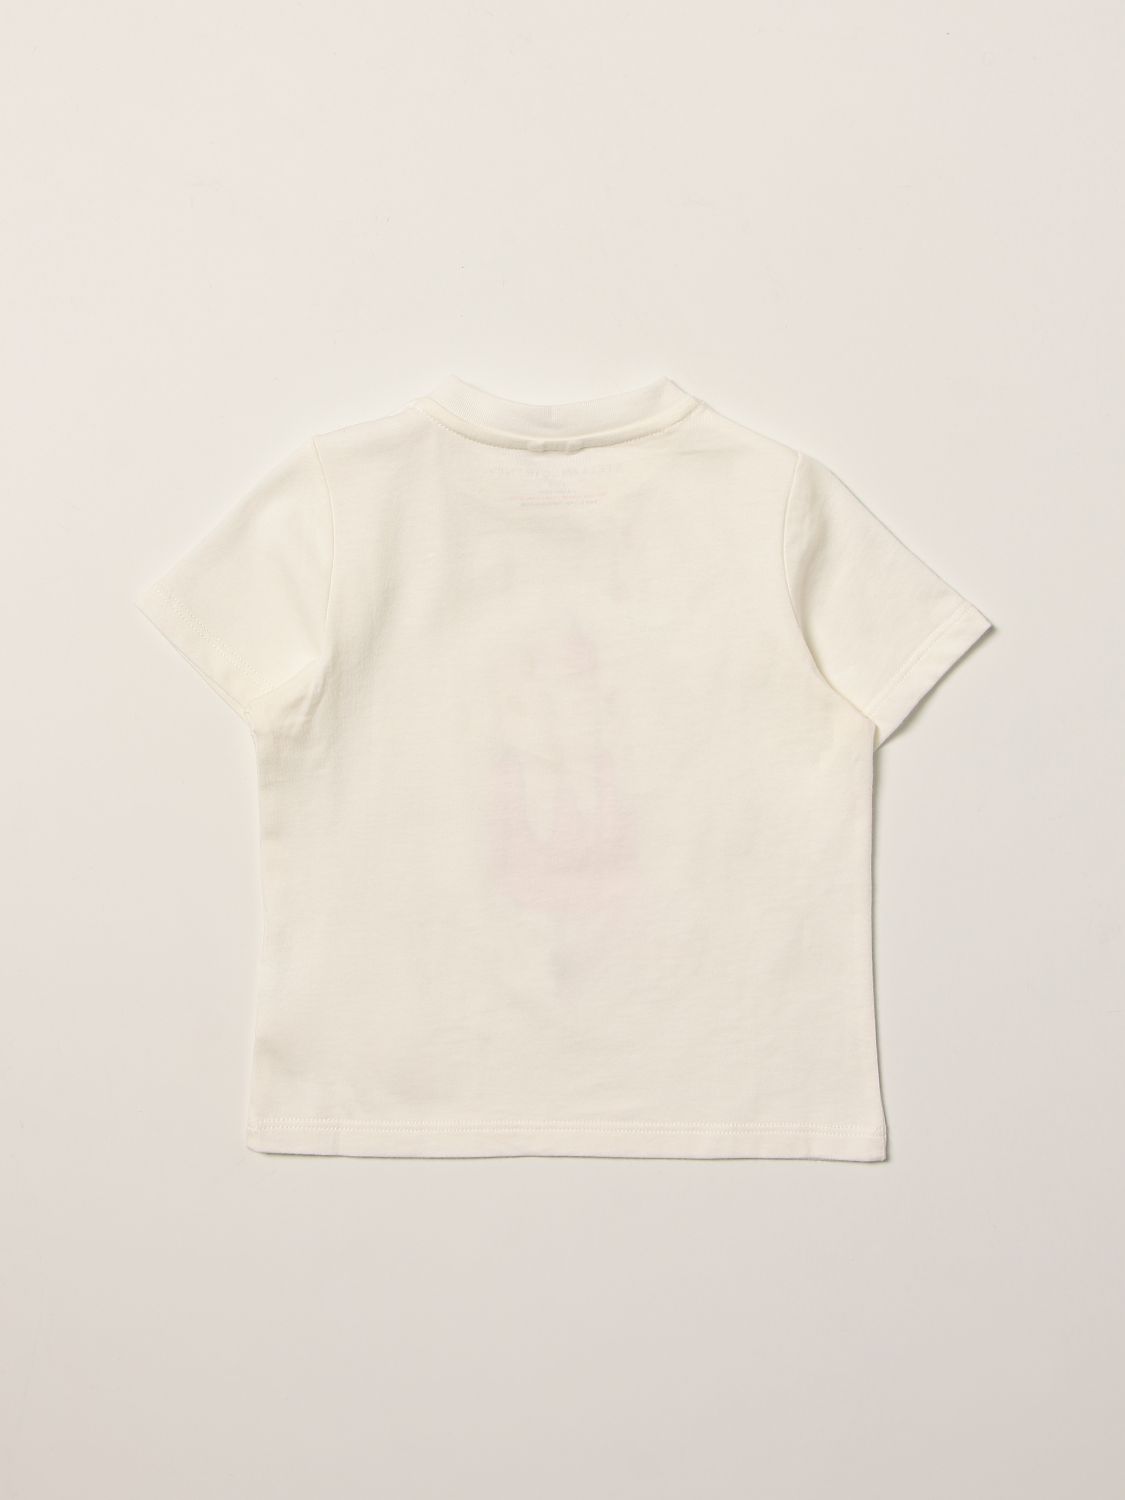 Camiseta Stella Mccartney: Camiseta Stella Mccartney para bebé blanco 2